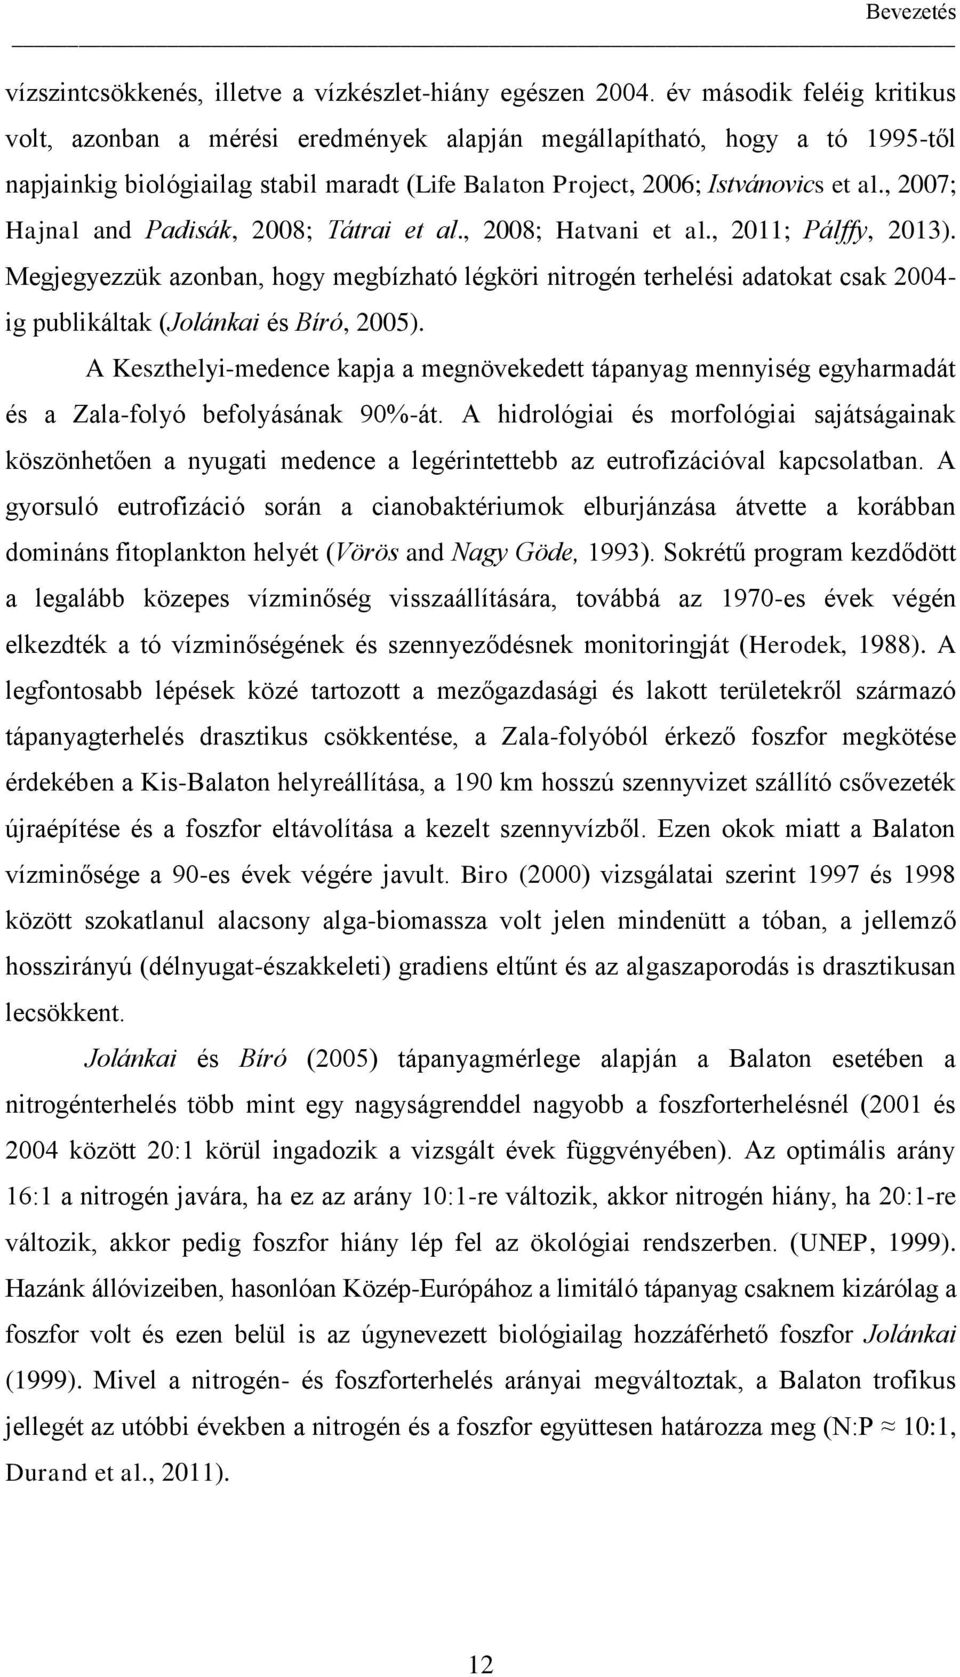 , 2007; Hajnal and Padisák, 2008; Tátrai et al., 2008; Hatvani et al., 2011; Pálffy, 2013).